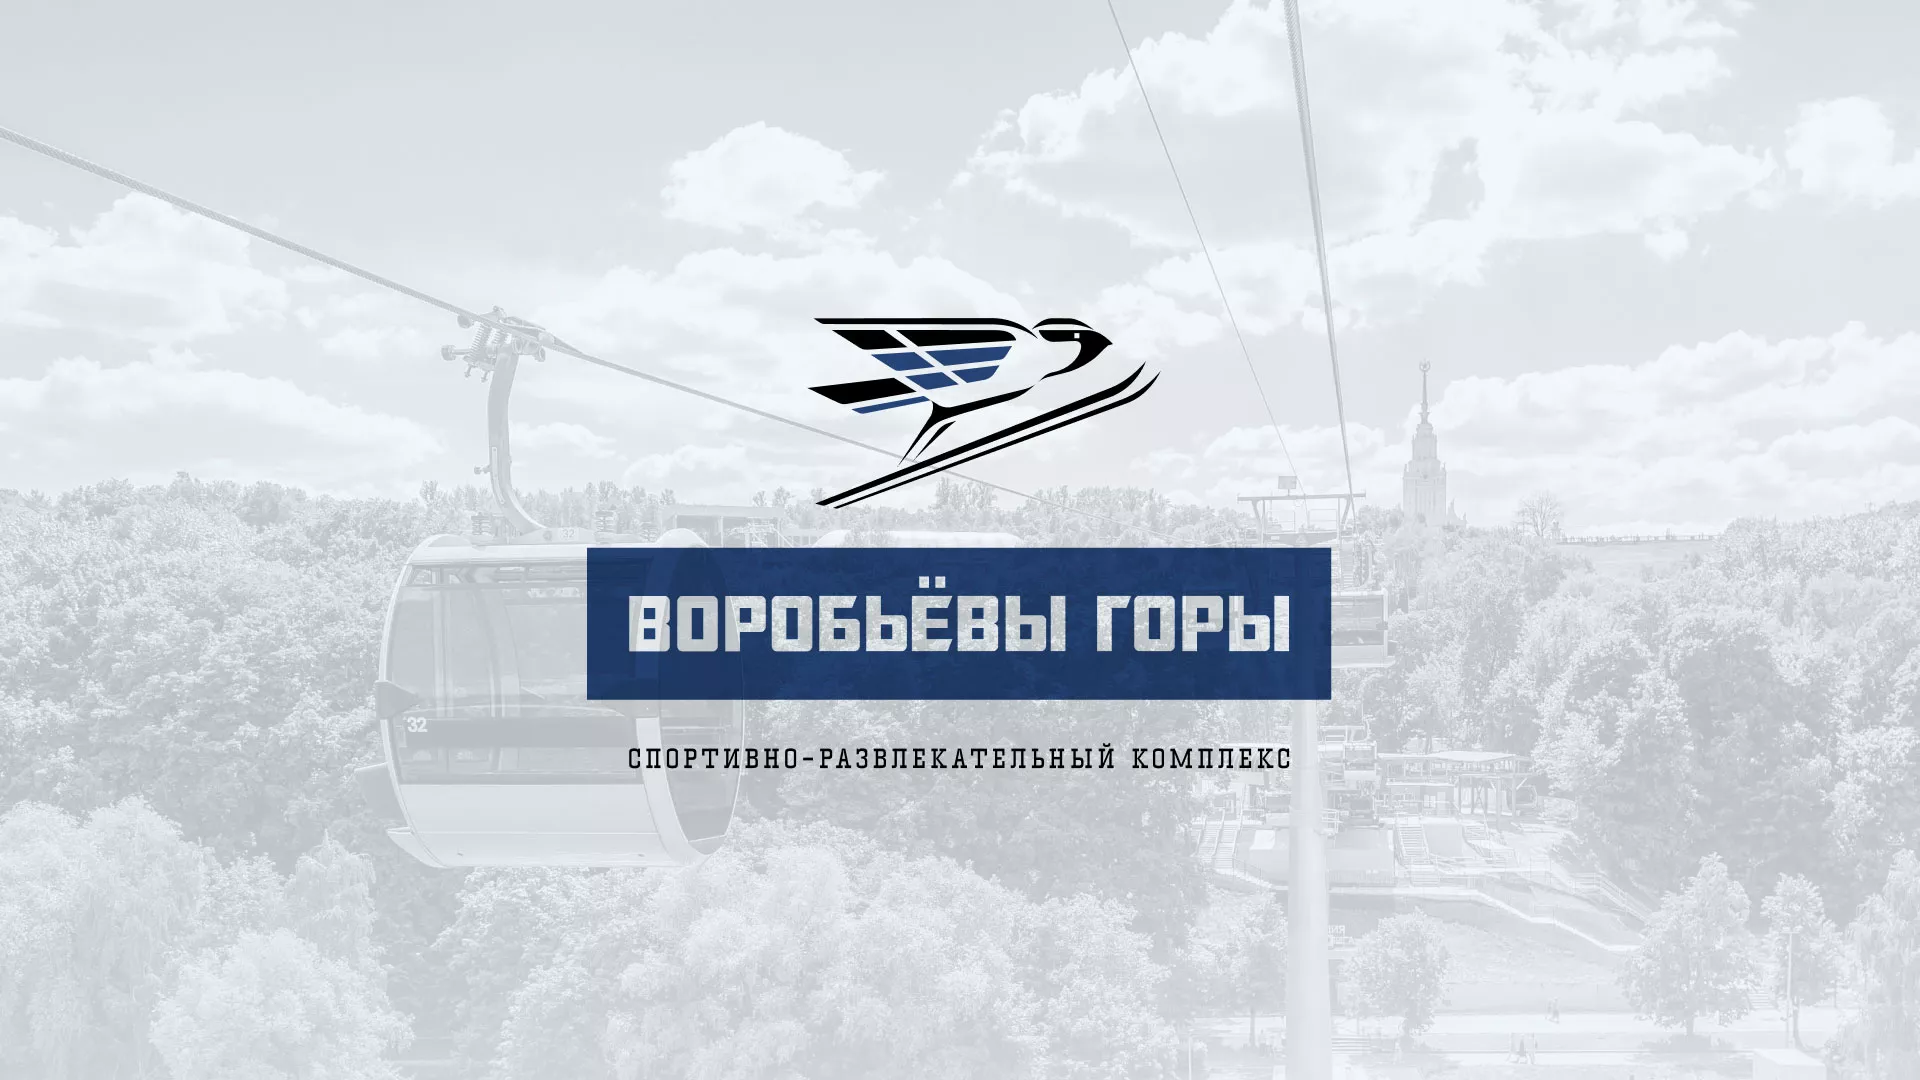 Разработка сайта в Белогорске для спортивно-развлекательного комплекса «Воробьёвы горы»